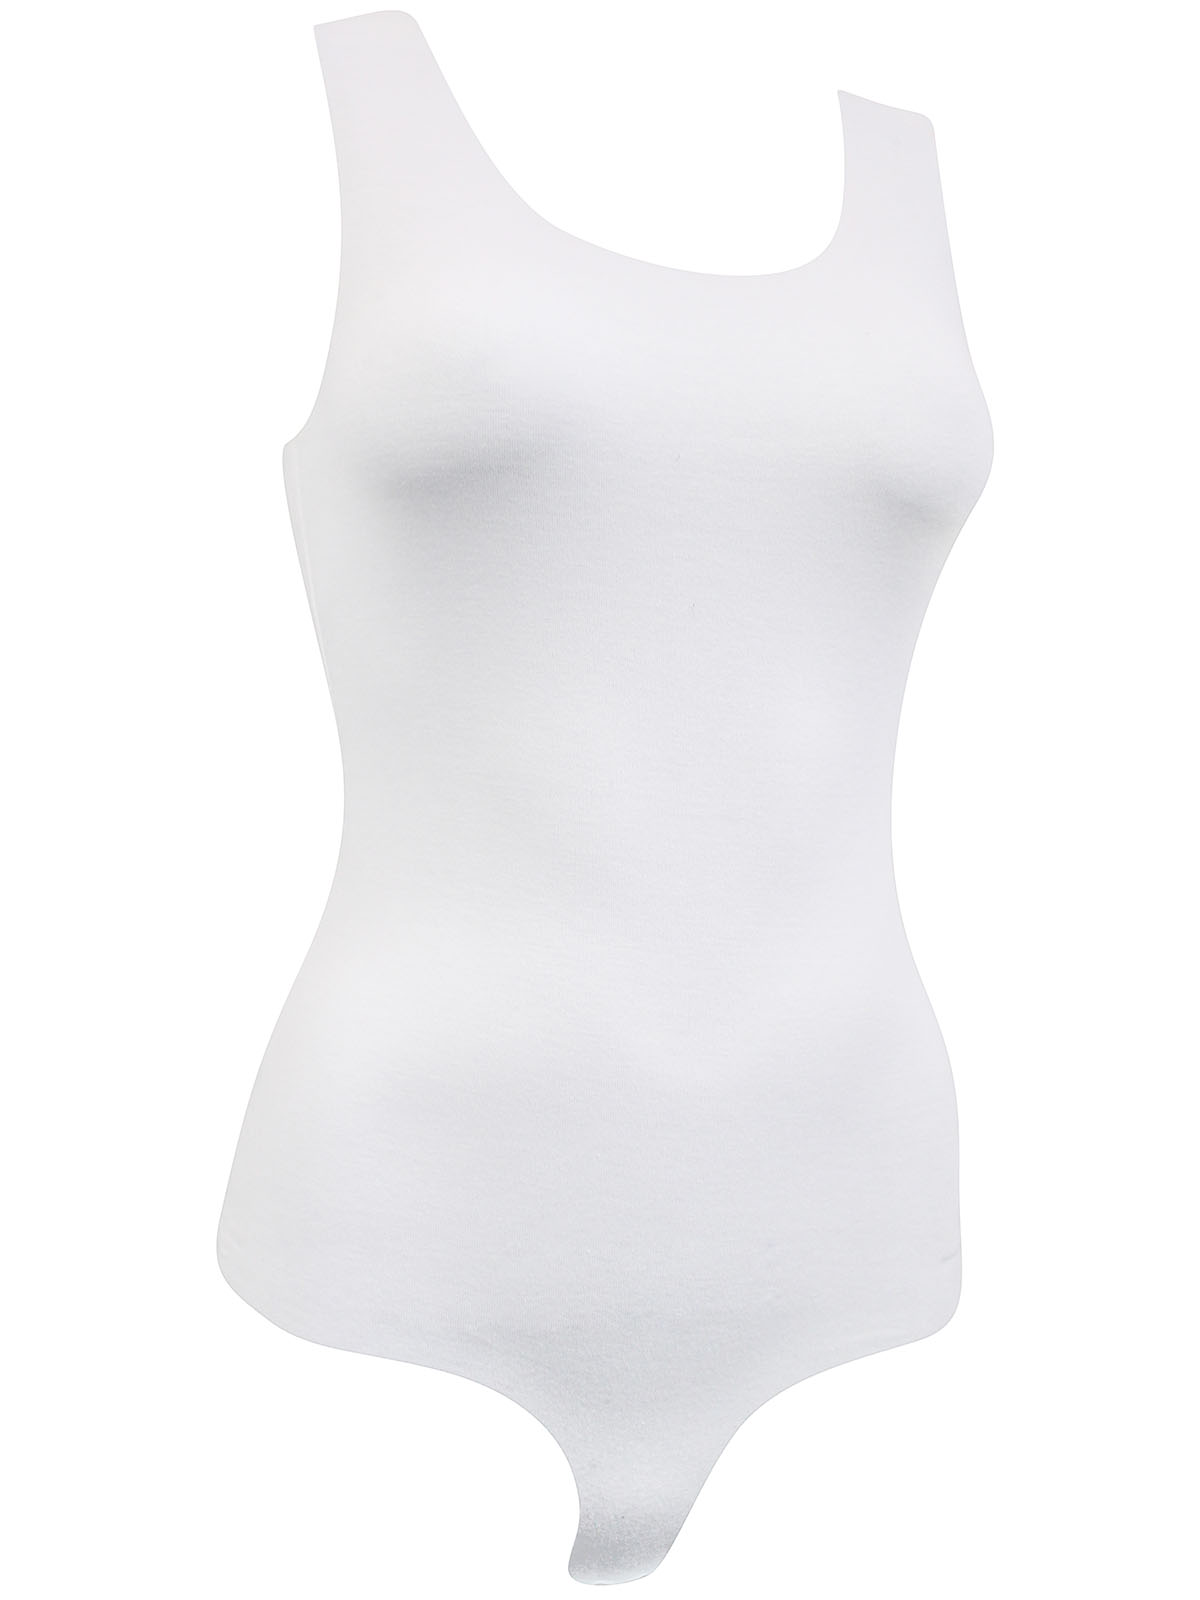 Nymos - - Nymos WHITE Invisible Sleeveless Cheeky Bodysuit - Size S to XL